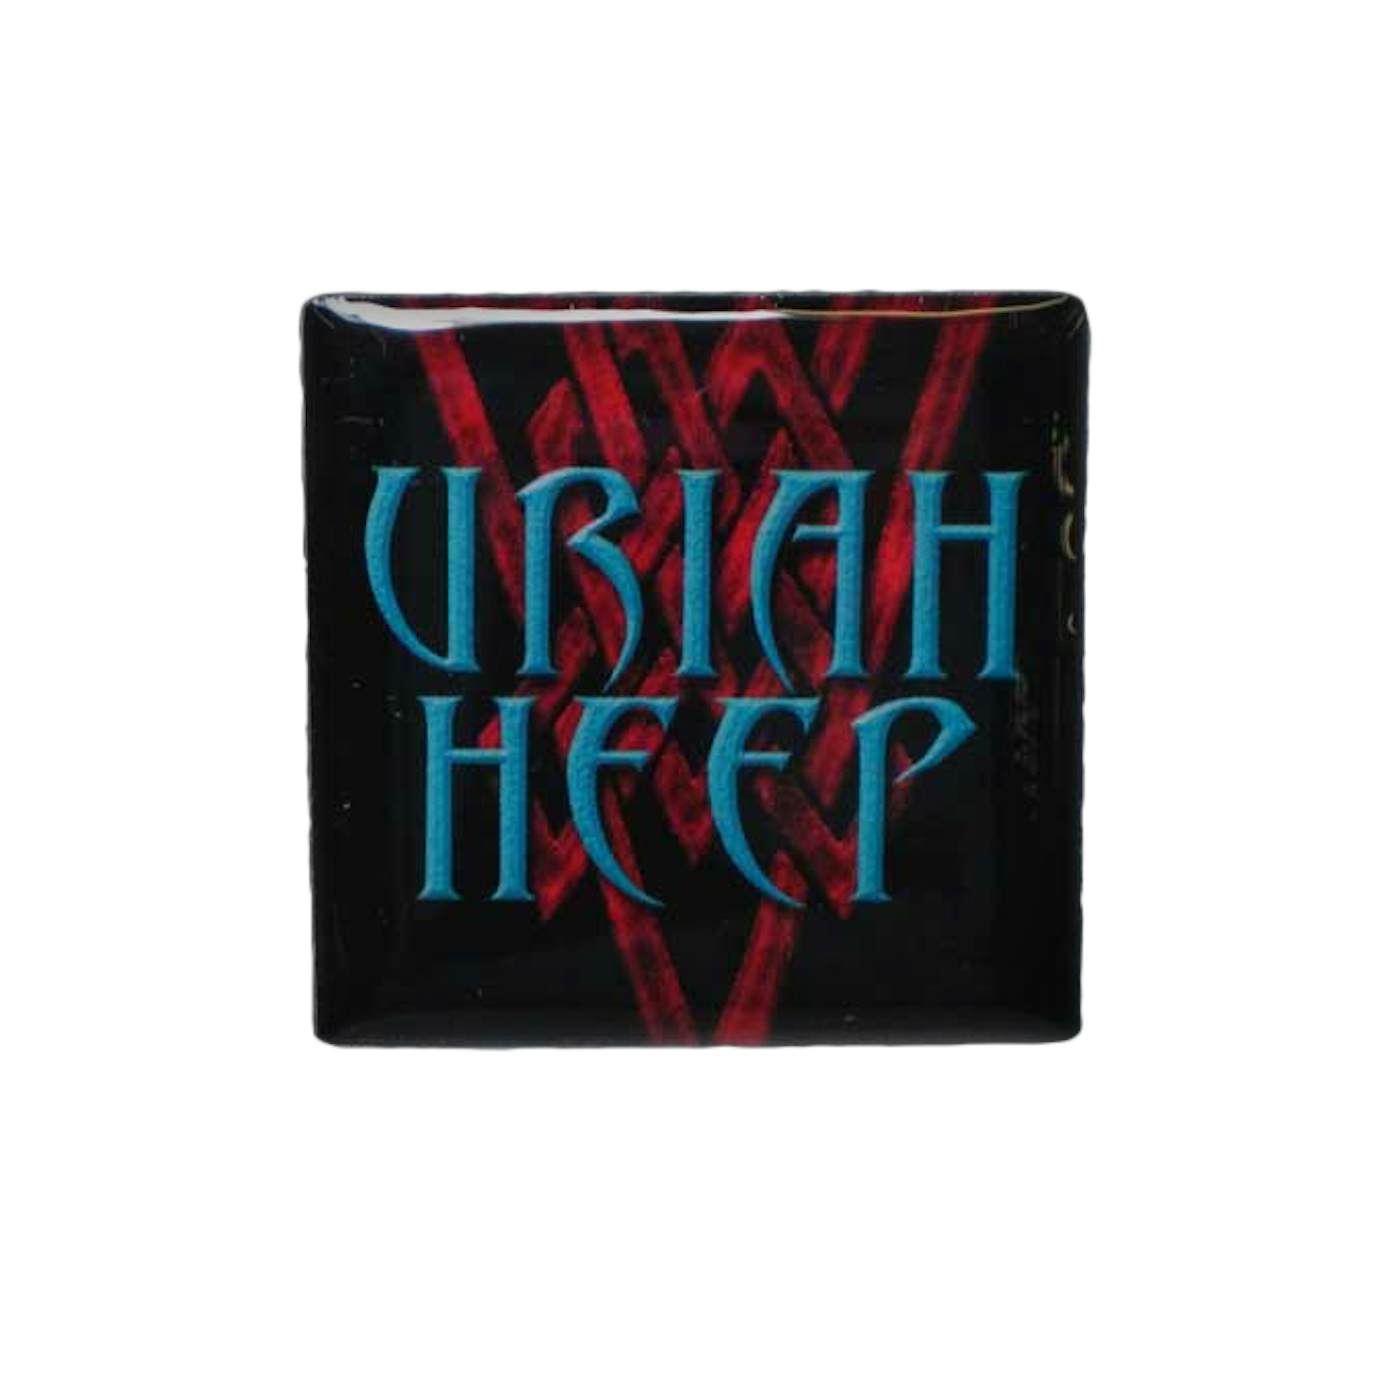 Uriah Heep "Red/Teal Logo" Lapel Pin